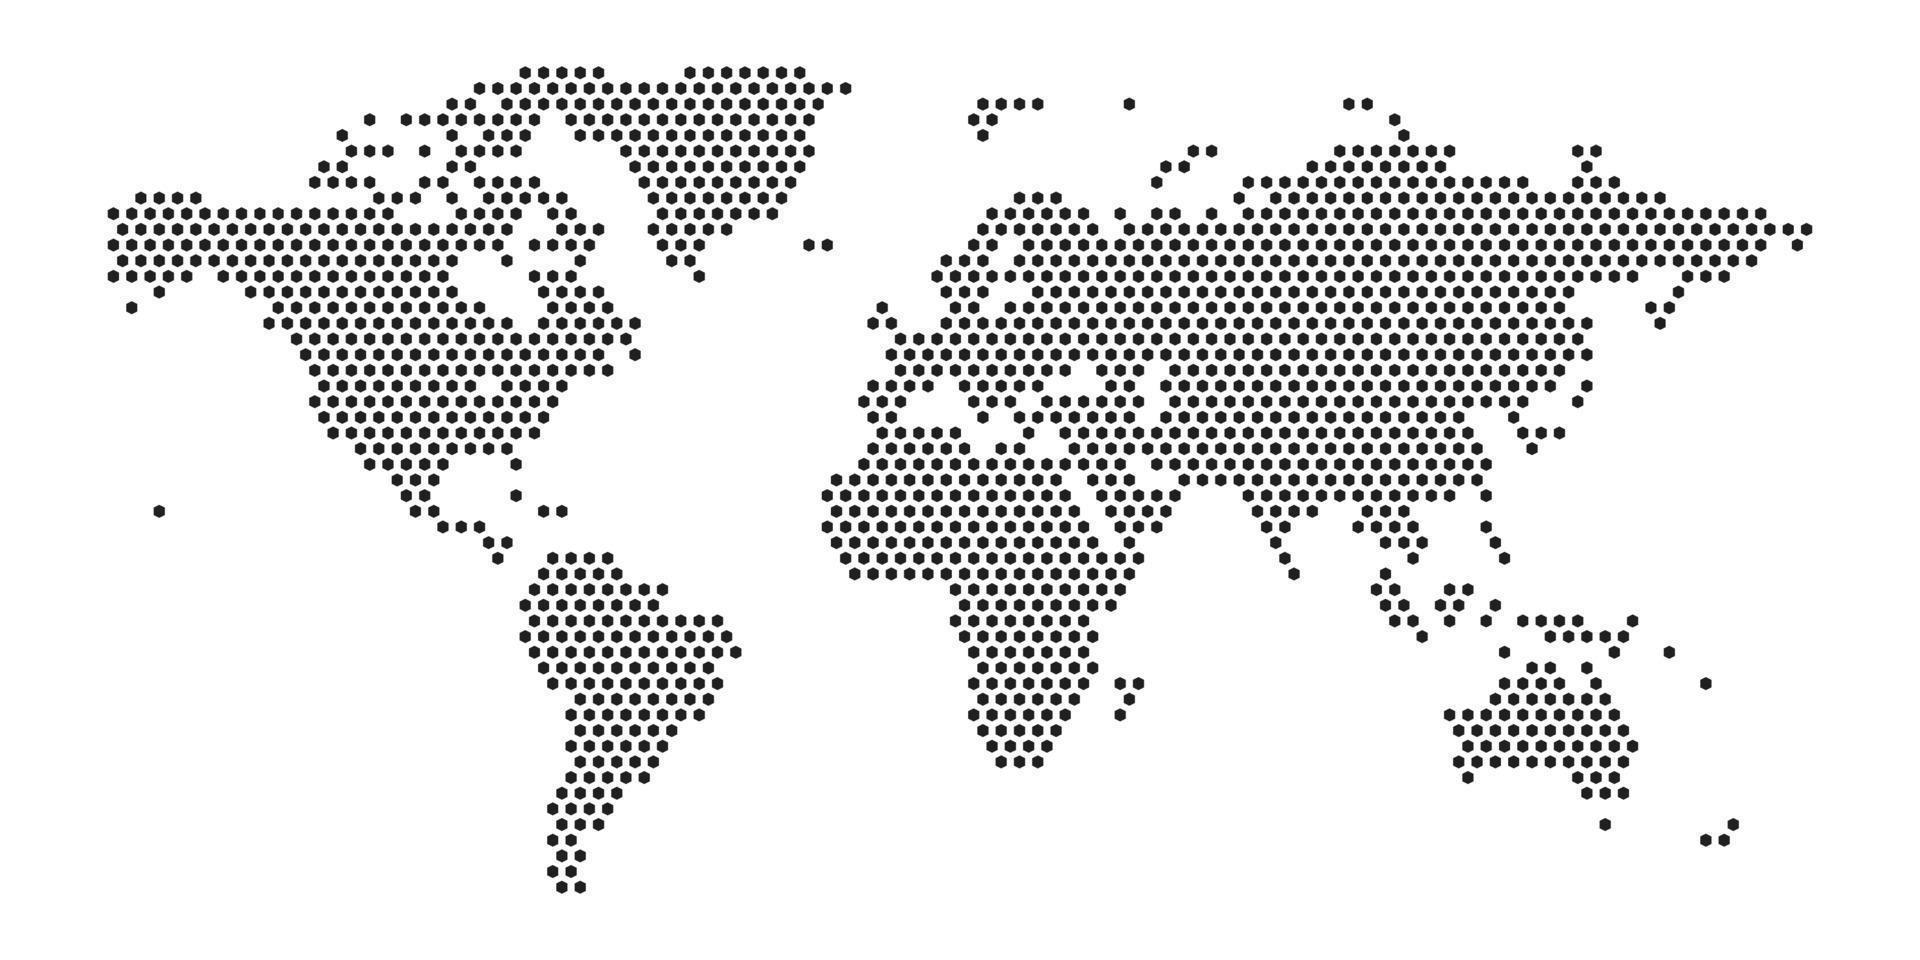 Weltkarte auf weißem Hintergrund. Weltkartenvorlage mit Kontinenten, Nord- und Südamerika, Europa und Asien, Afrika und Australien vektor